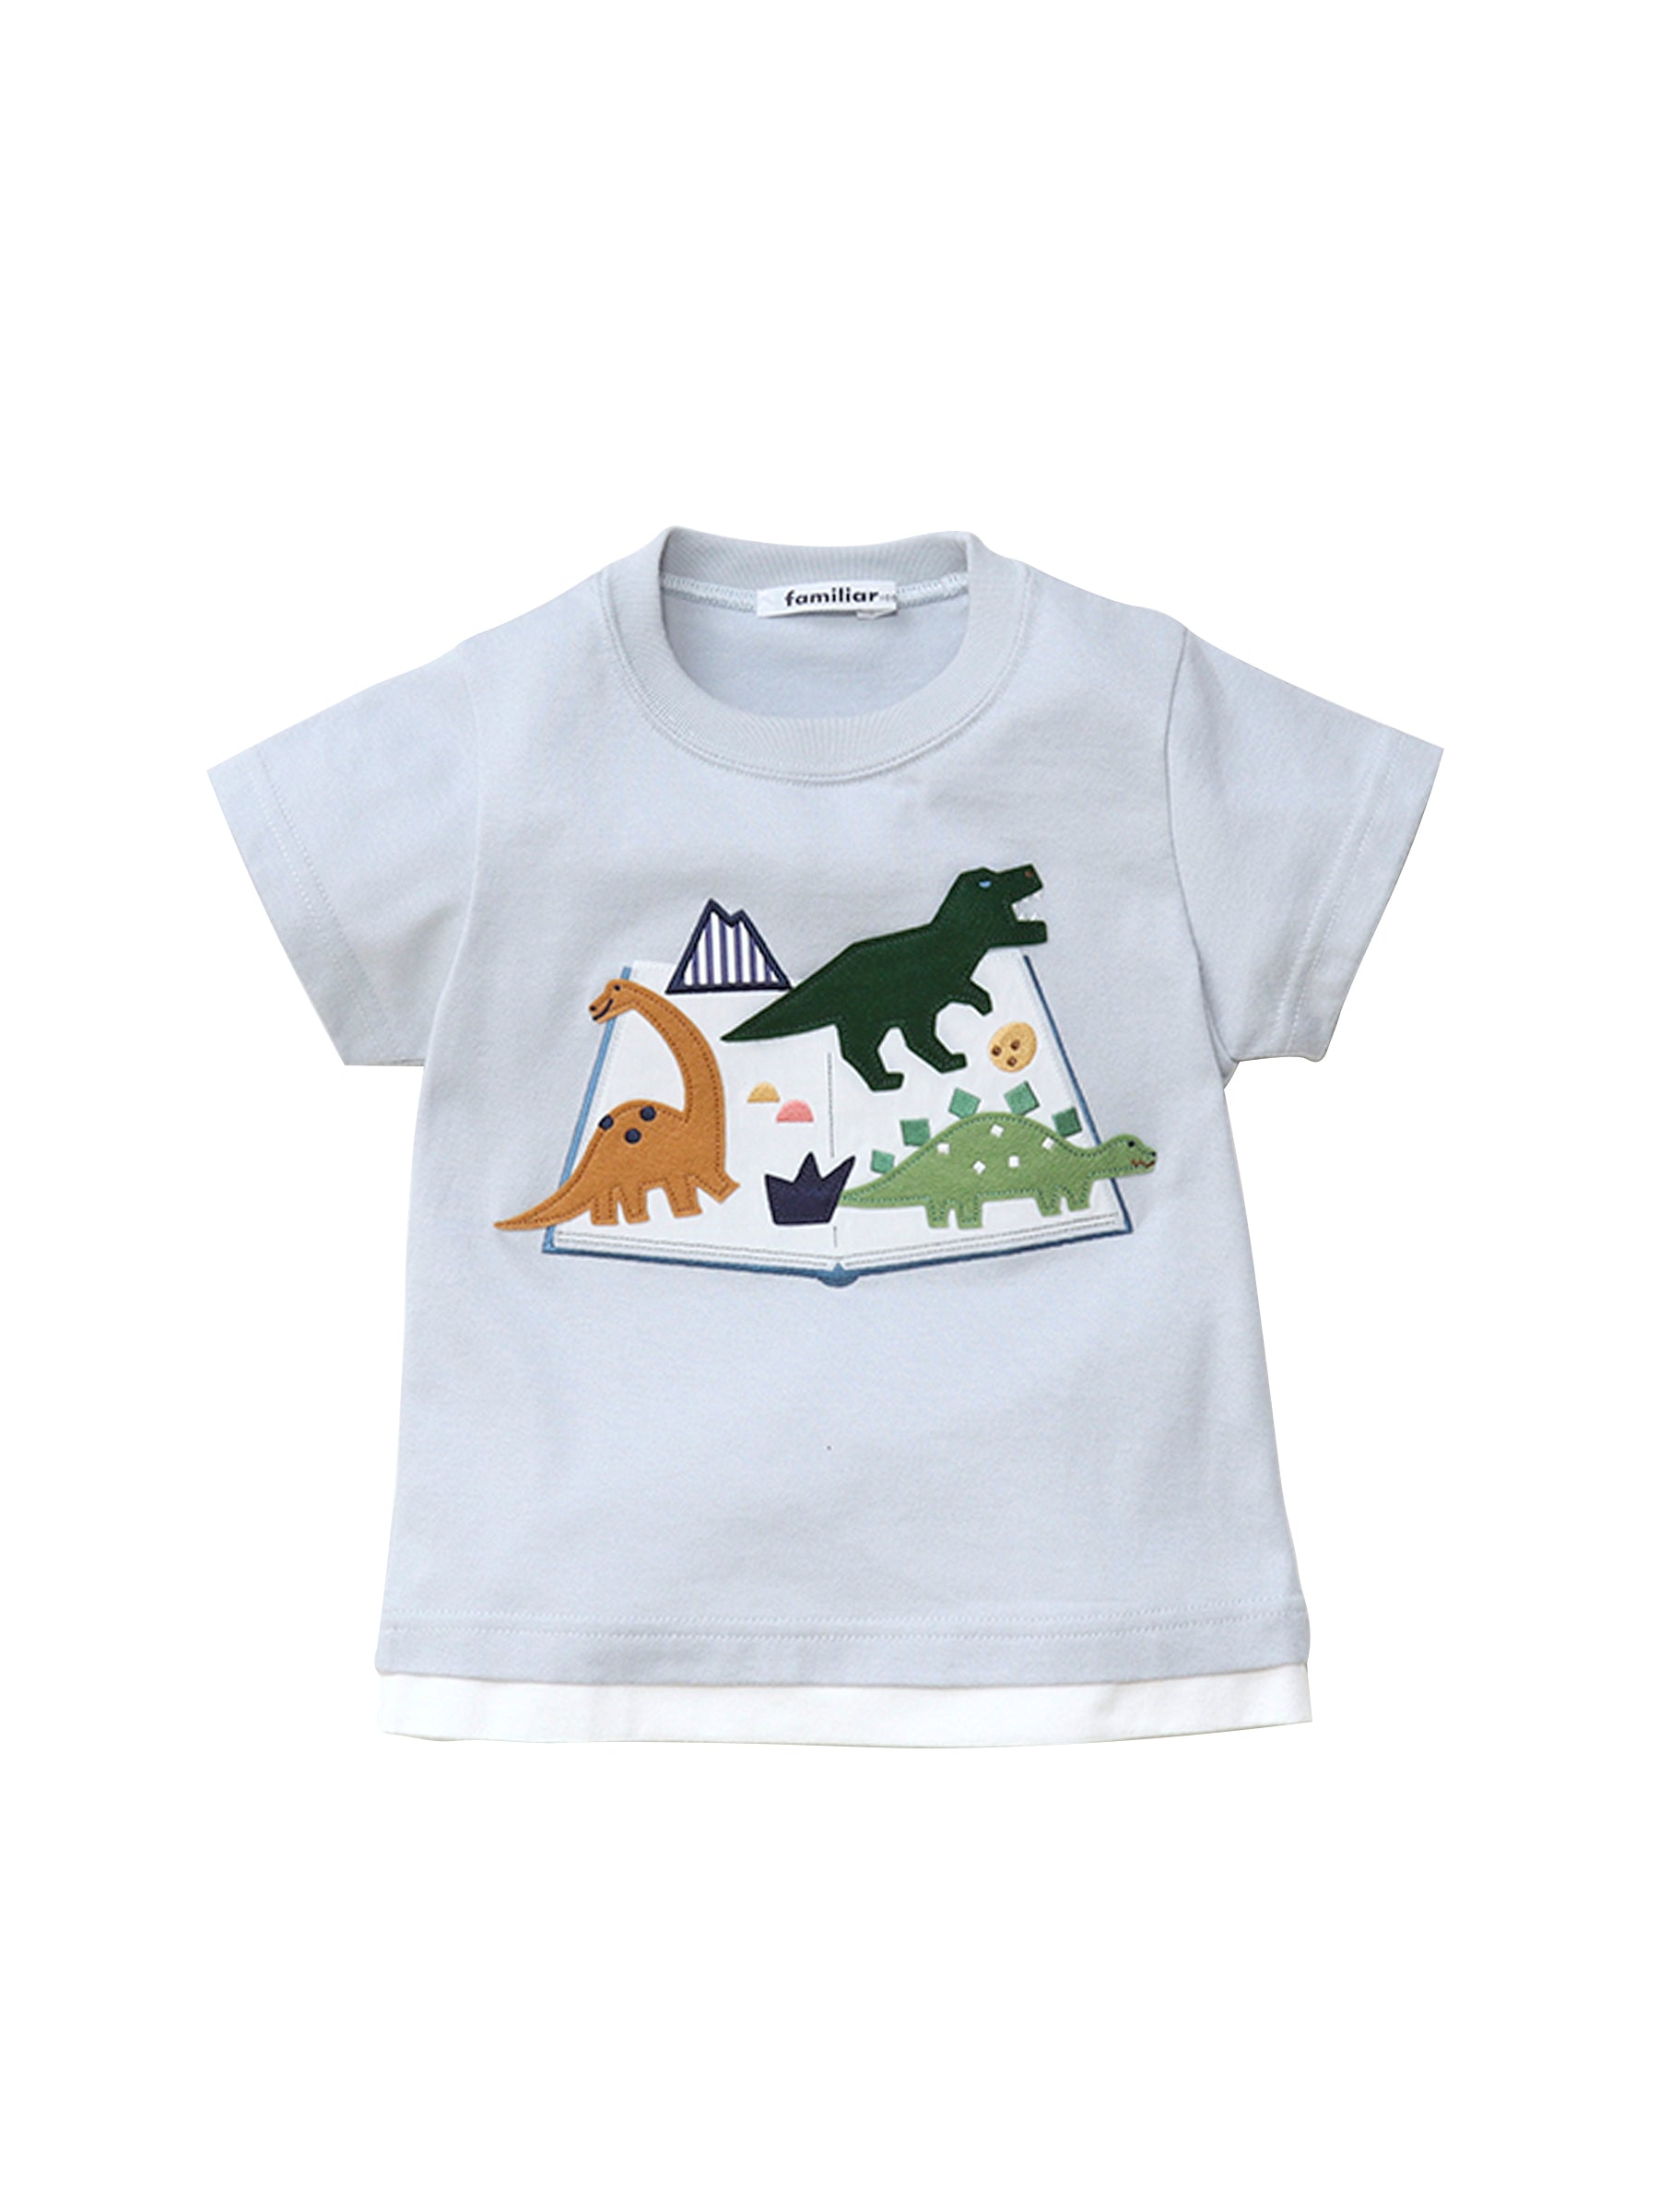 キッズ/ベビー/マタニティファミリア恐竜Tシャツ